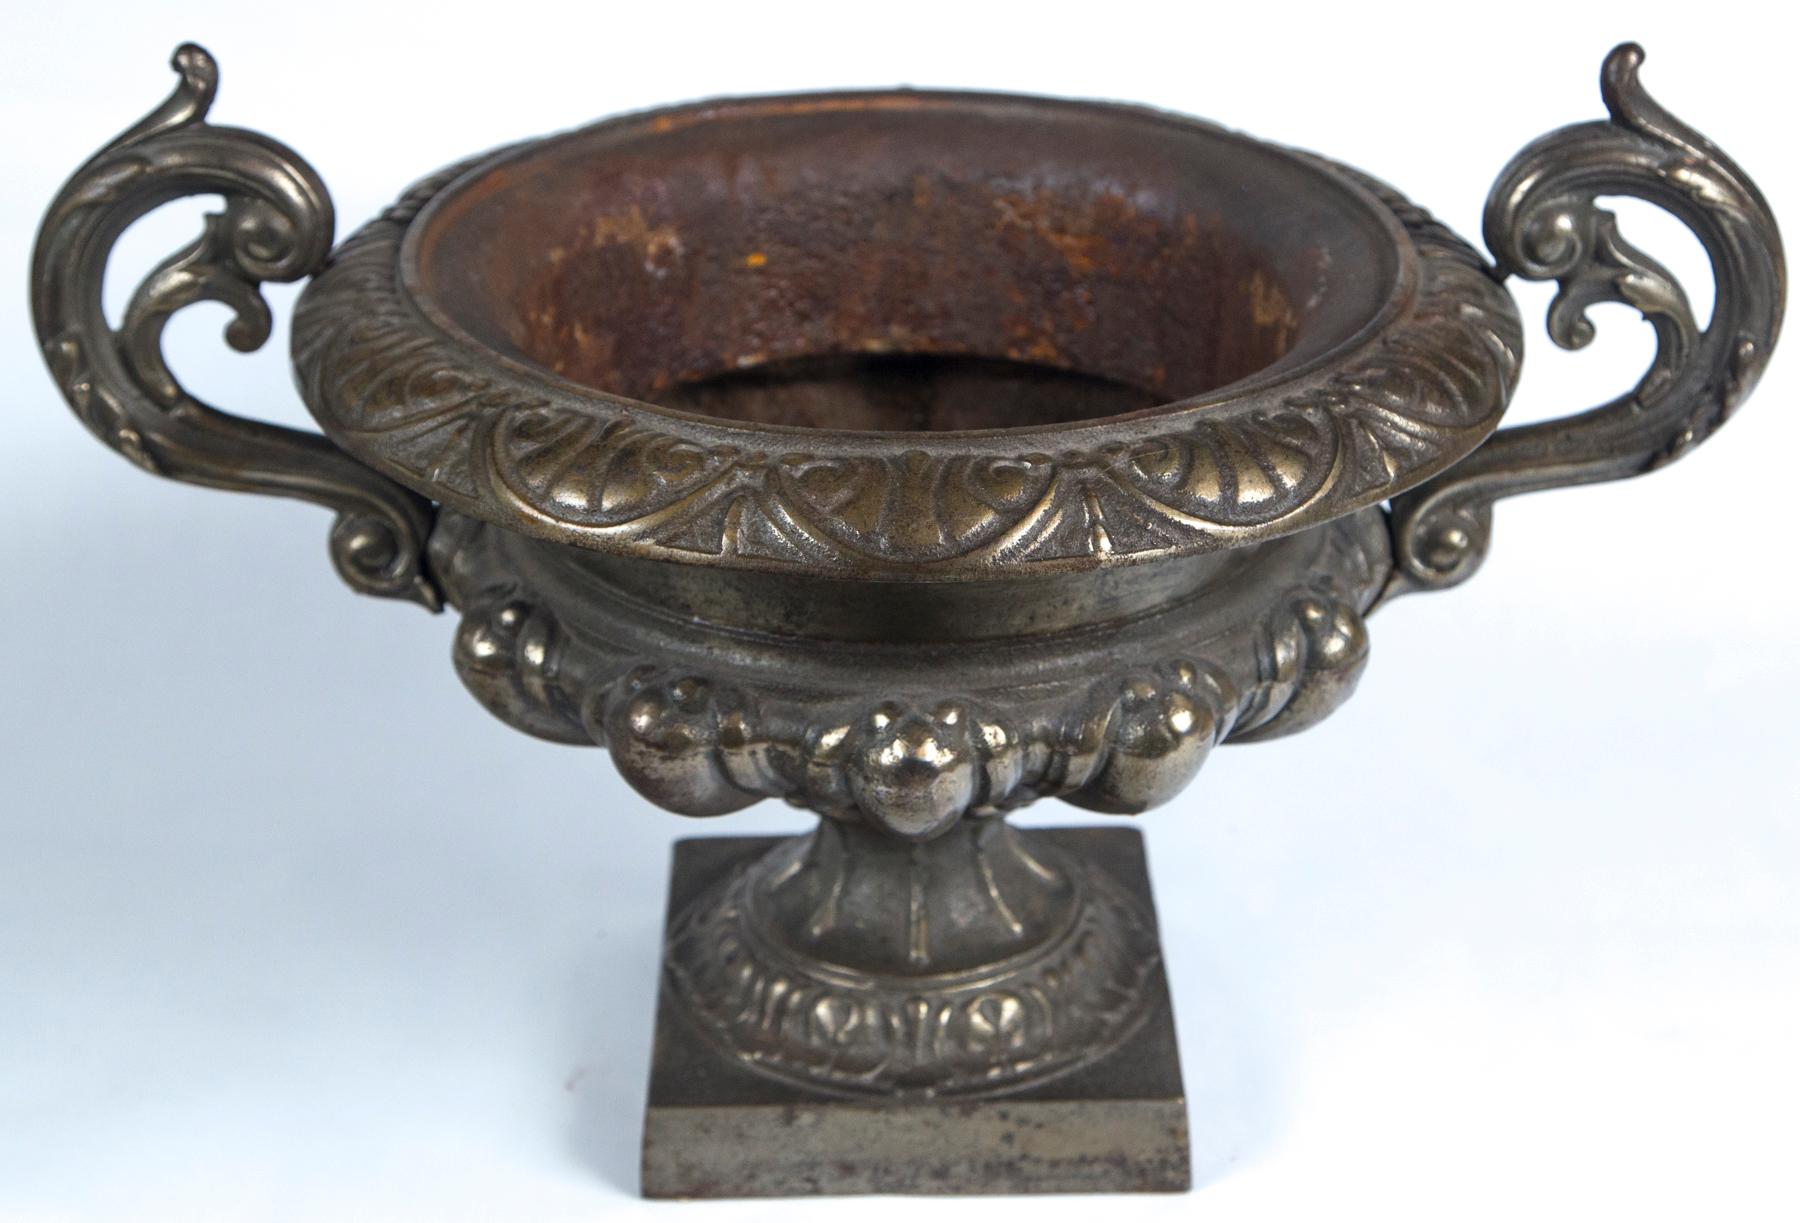 Urne en fonte, France, vers 1900. Design classique Art nouveau avec poignées à volutes. Finition patinée bronze foncé.